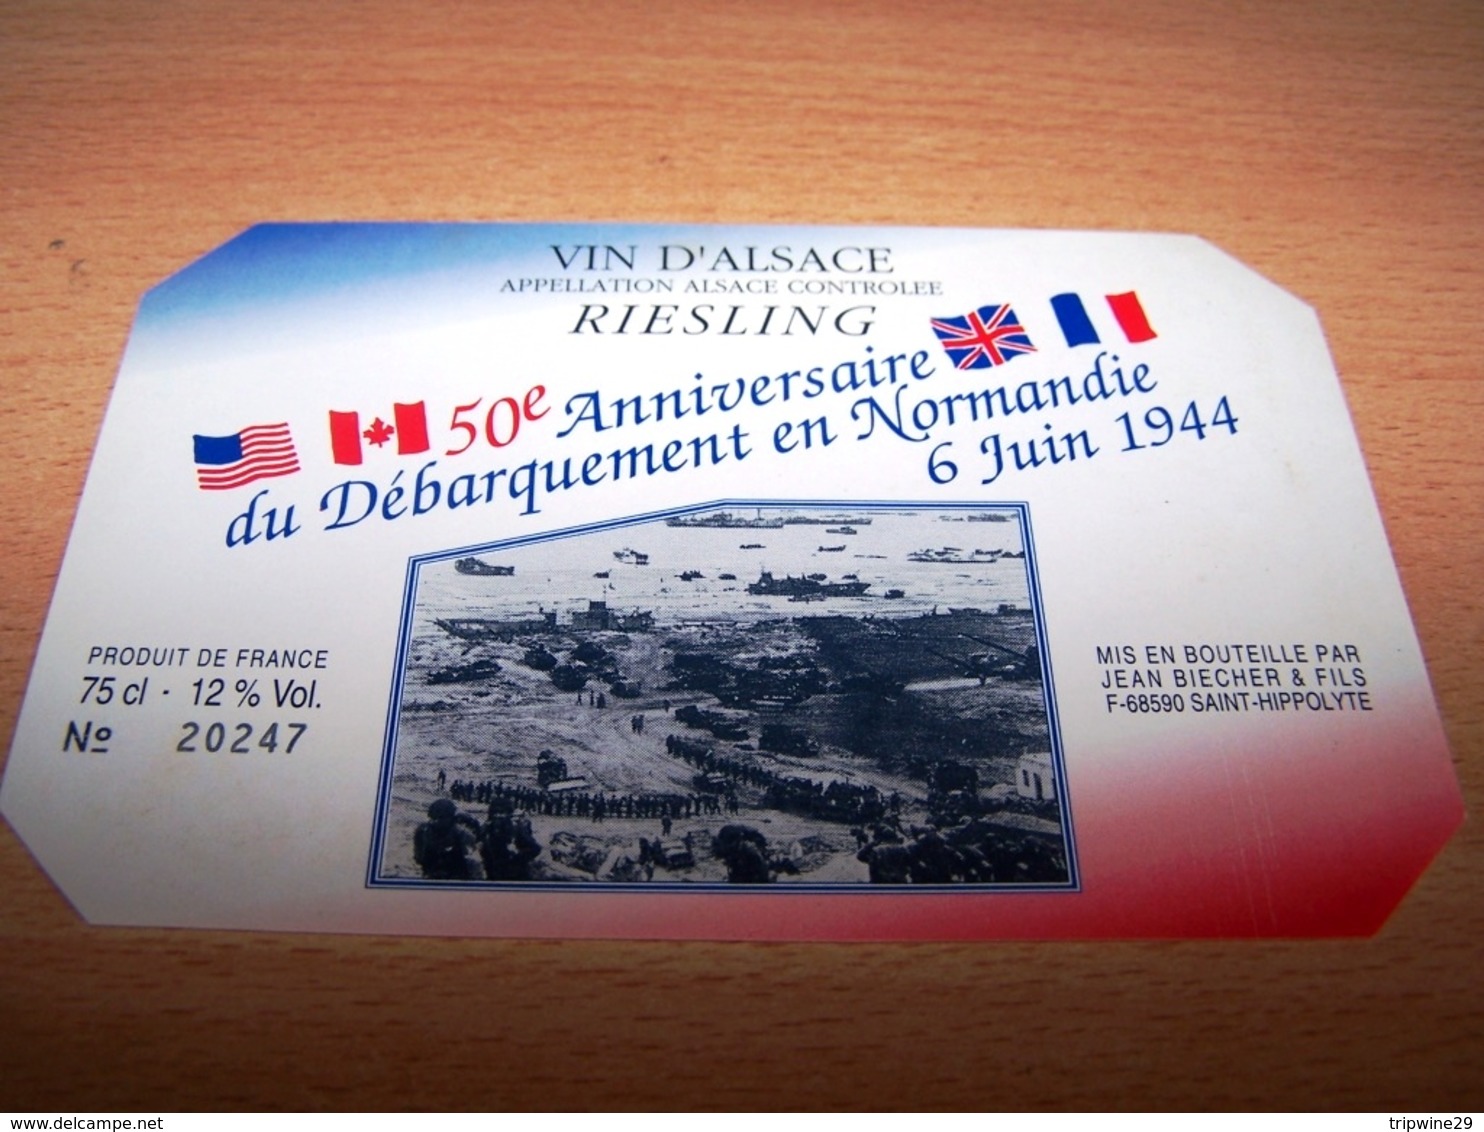 Etiquette Vin Wine Label Armée Militaire Debarquement Normandie Anniversaire Dday 6 Juin 1944 Riesling - Cinquantenaire De La Libération